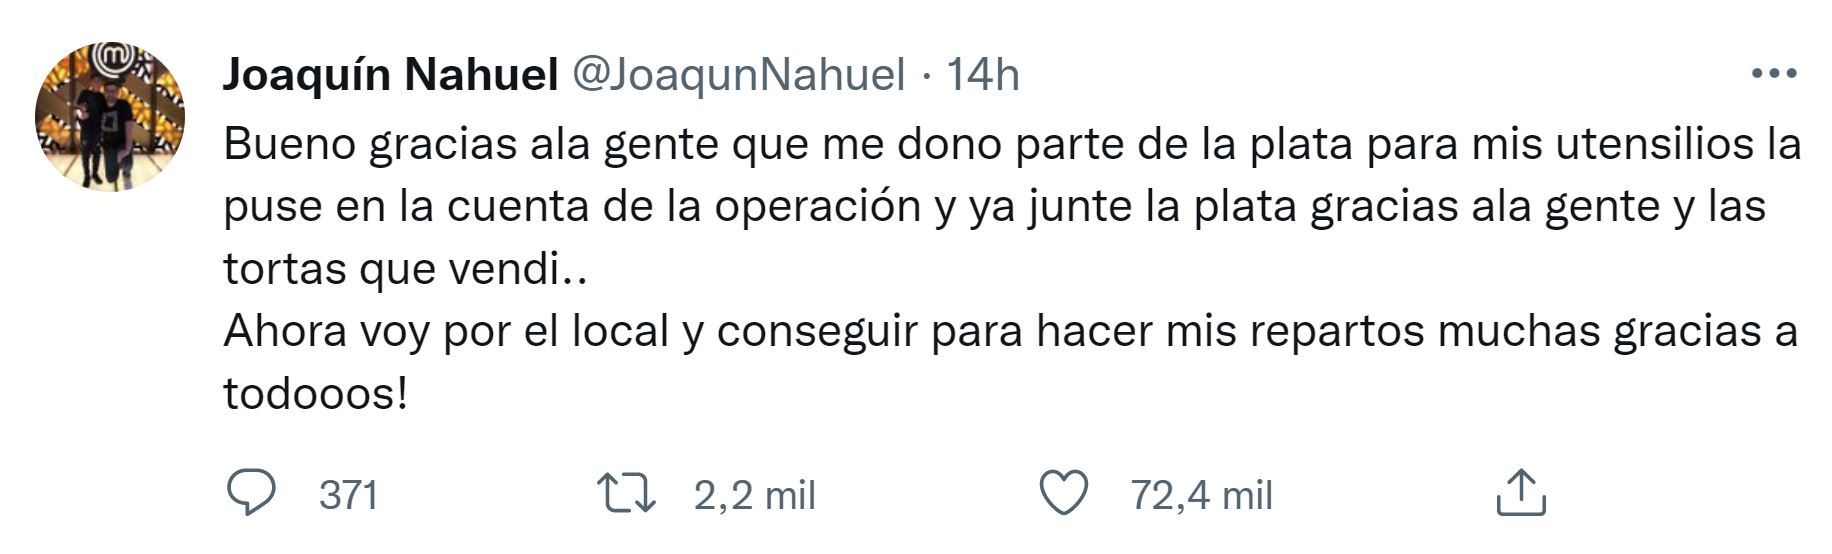 El mensaje de Joaquín Nahuel en su Twitter